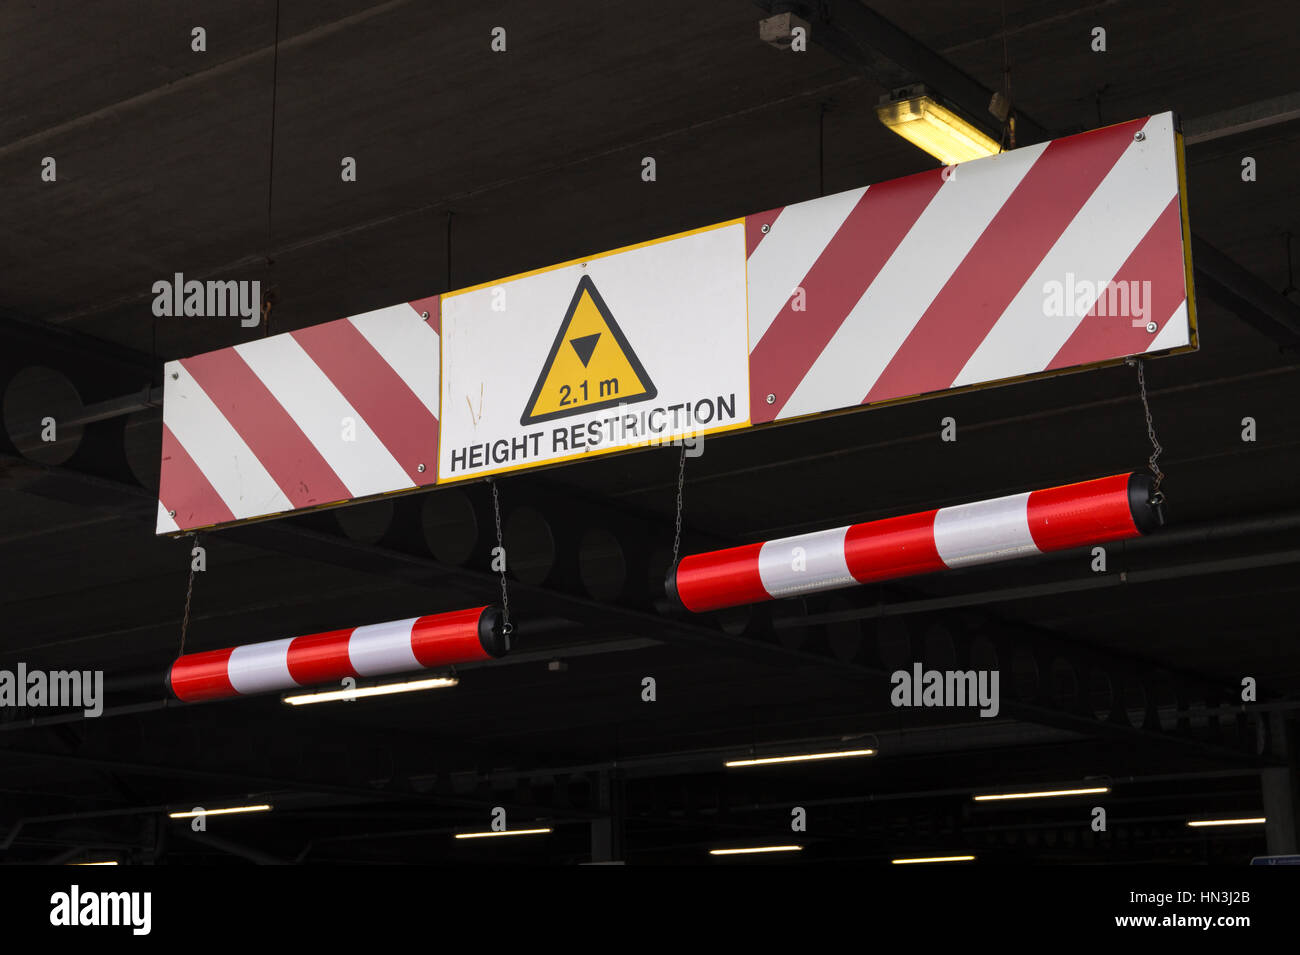 Señal de restricción de altura en aparcamiento subterráneo Foto de stock